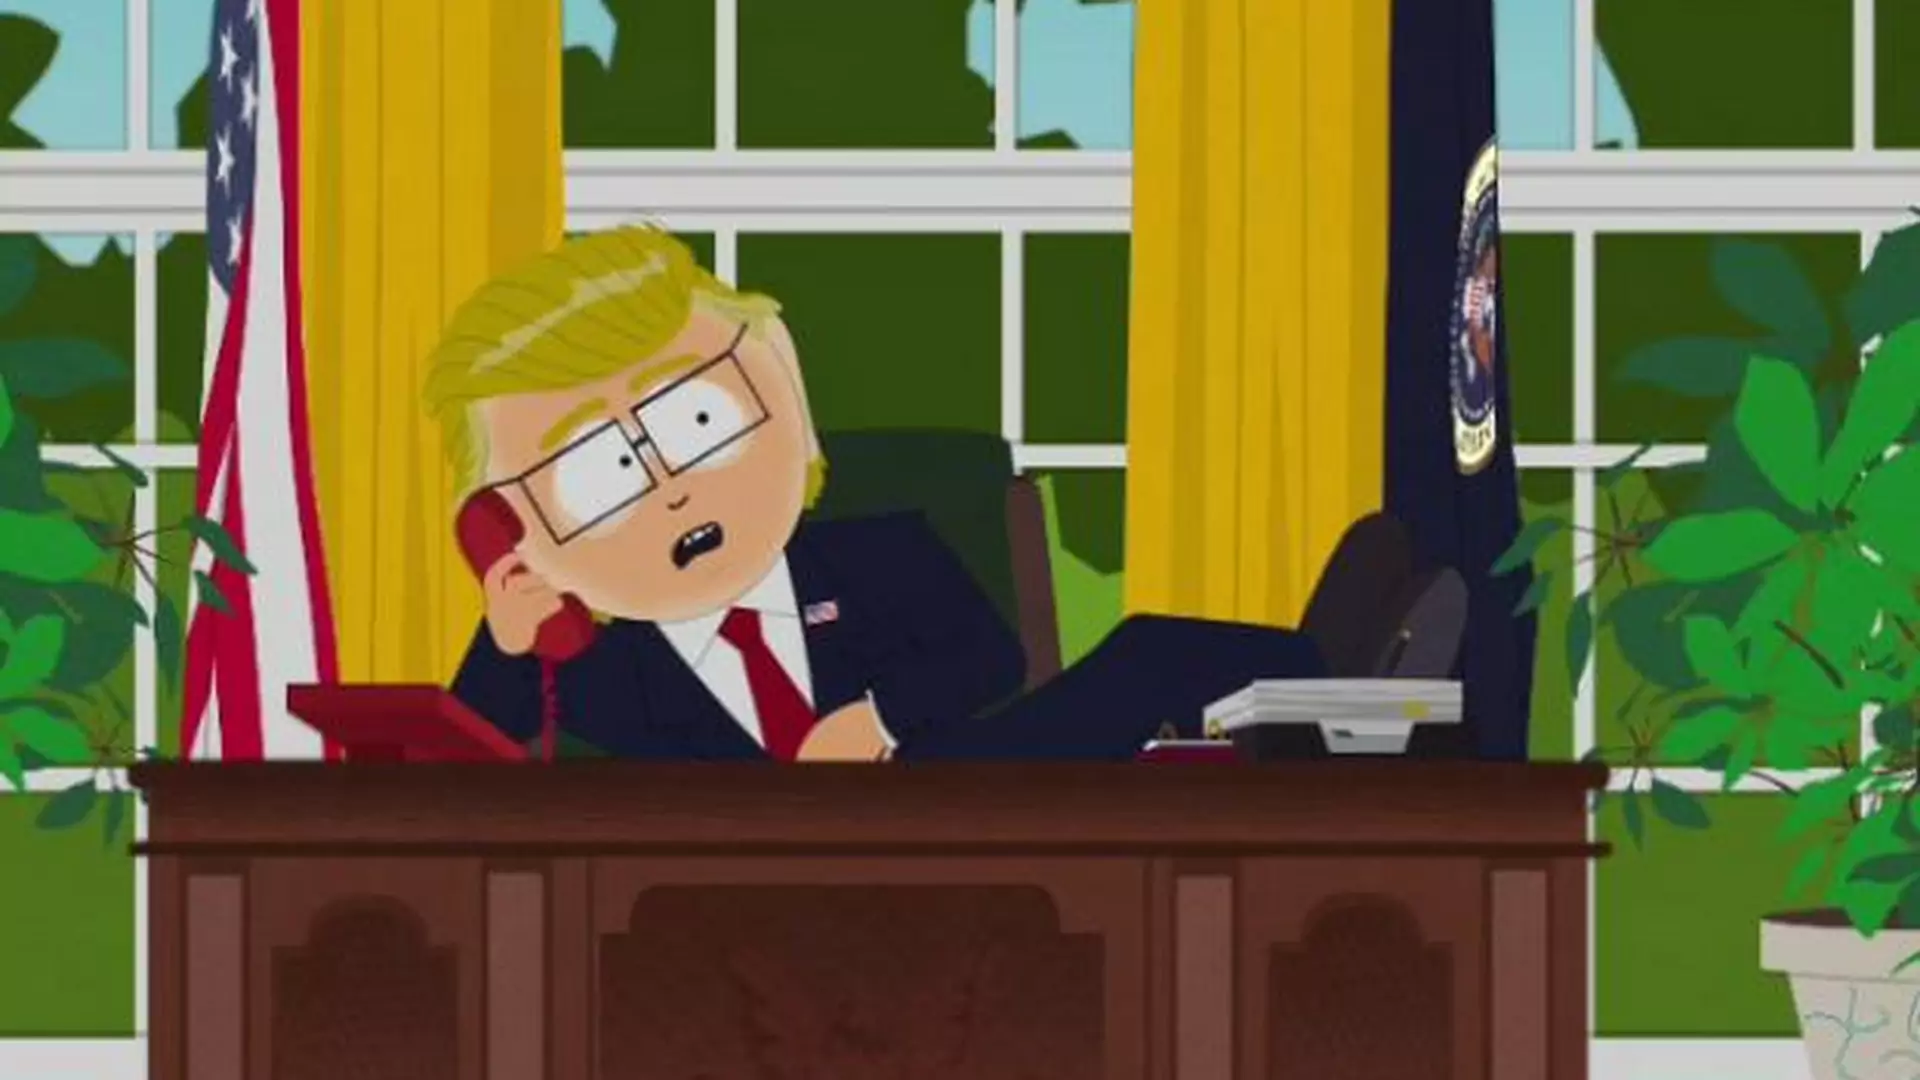 South Park: Trump dzwoni do "karła z Polski" i każe mu "wyobrazić sobie smak jego jaj"